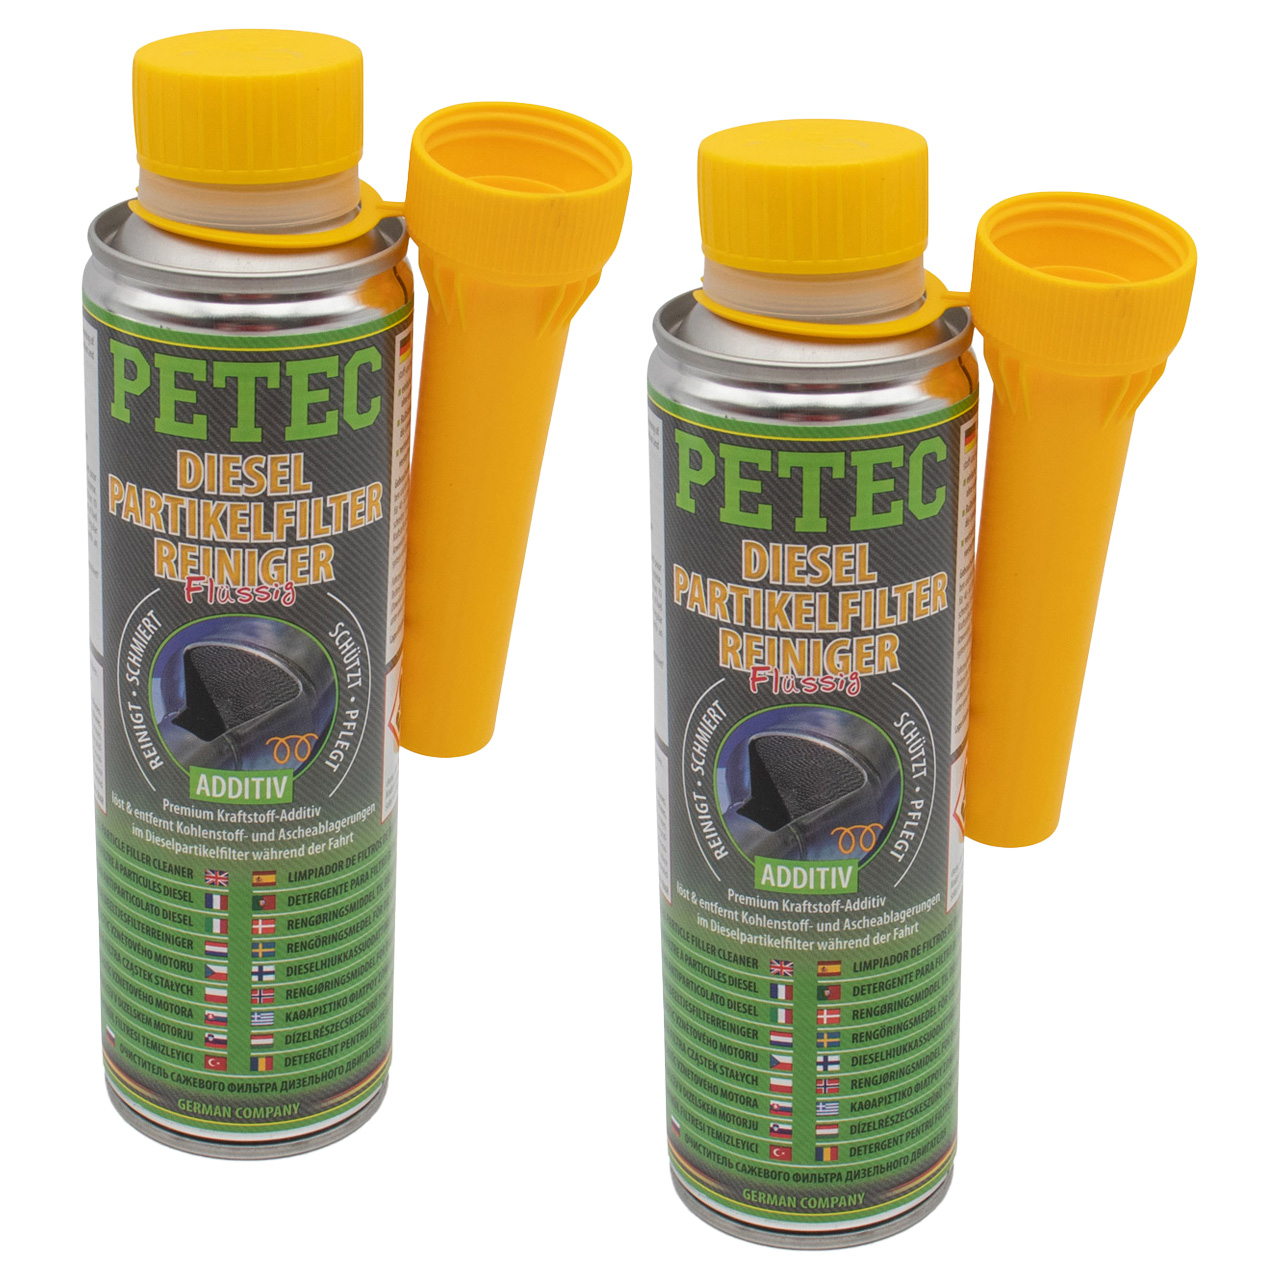 2x 300ml PETEC Dieselpartikelfilterreiniger Flüssig Premium Kraftstoffadditiv Additiv